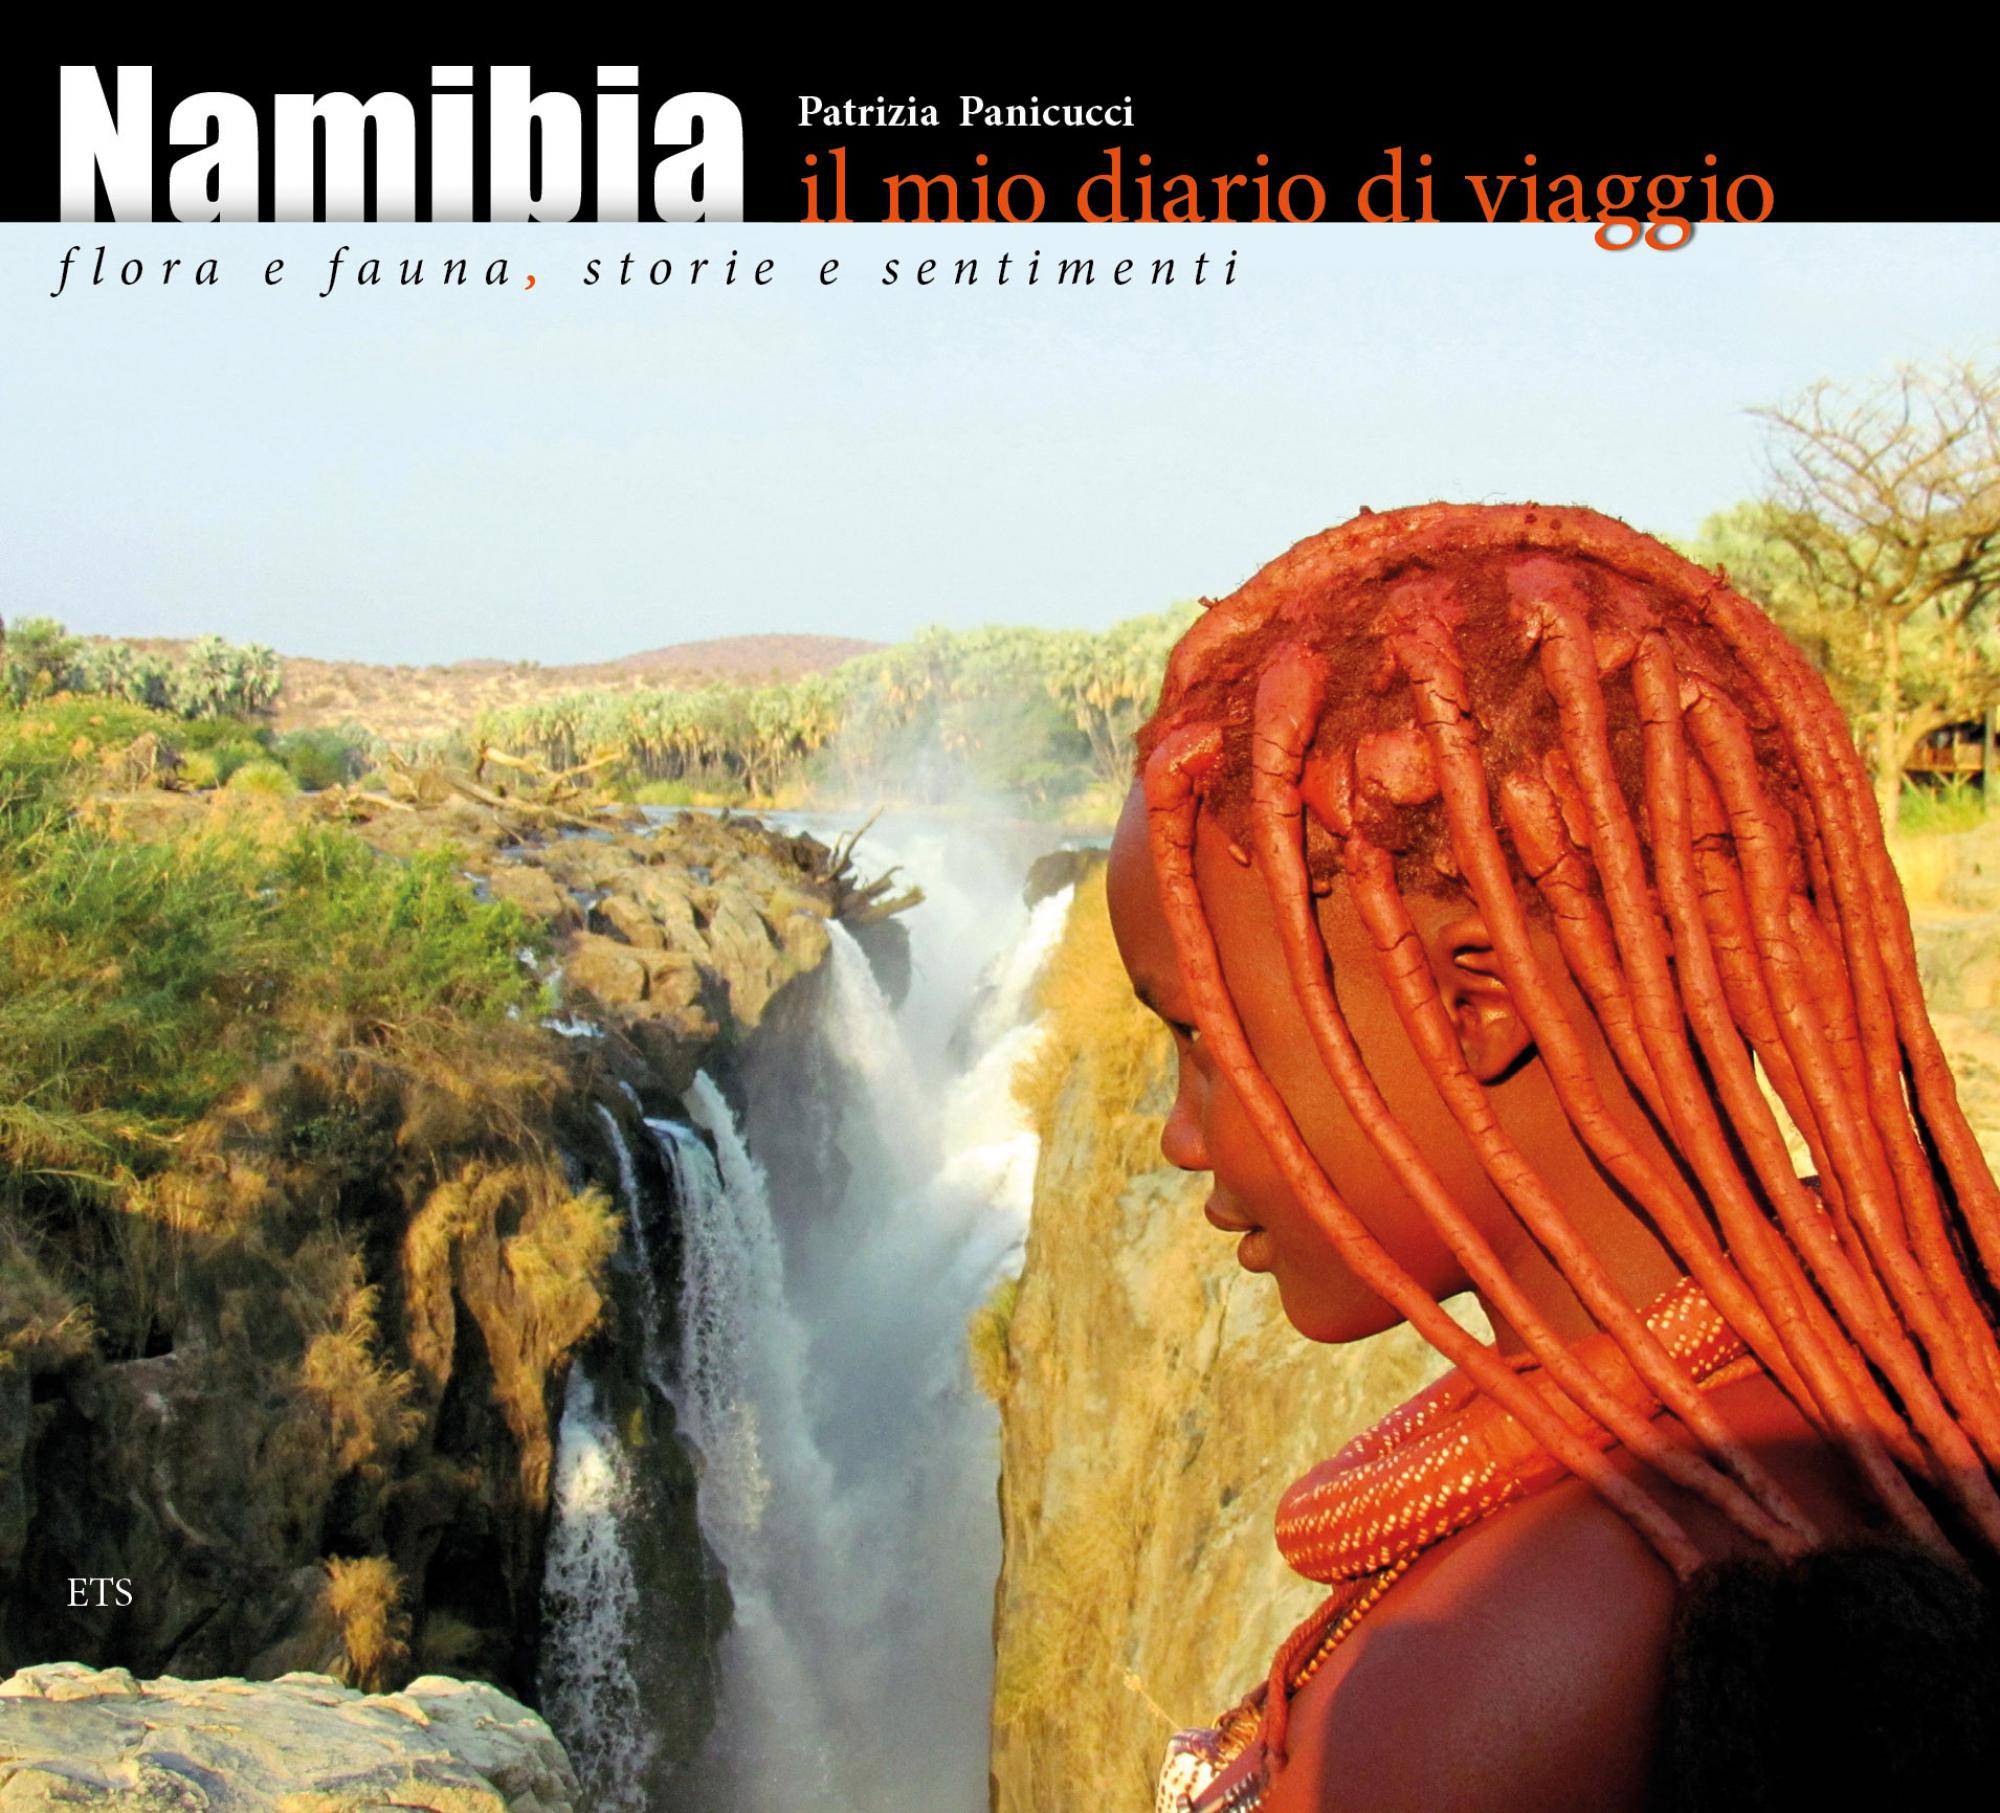 Namibia.Il mio diario di viaggio. Flora e fauna, storie e sentimenti